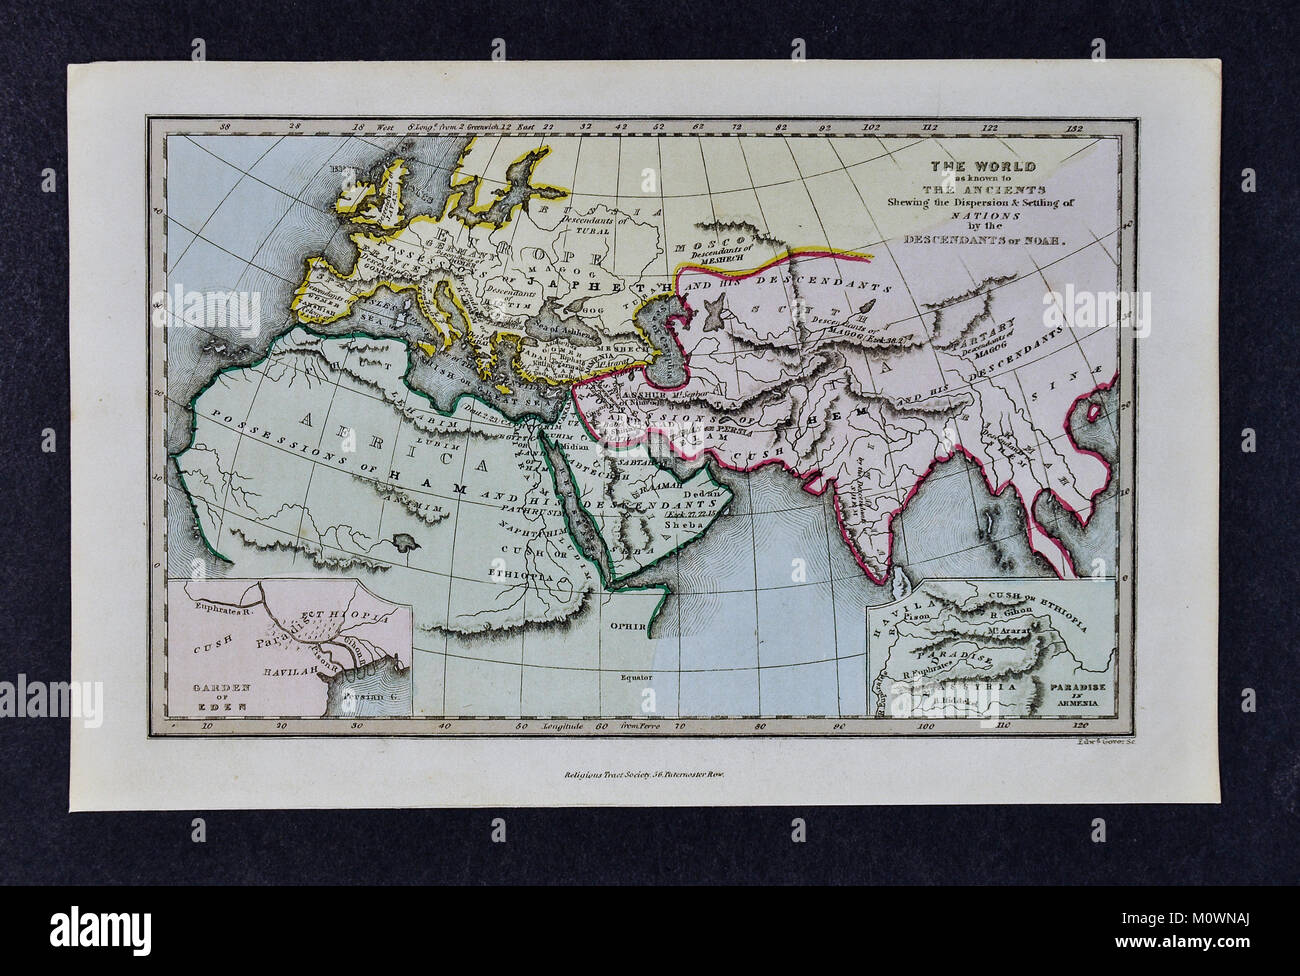 1799 La Bibbia Tract Society mappa - Il mondo come è noto per gli antichi che mostra la dispersione e la sedimentazione delle Nazioni dai discendenti di Noè Foto Stock